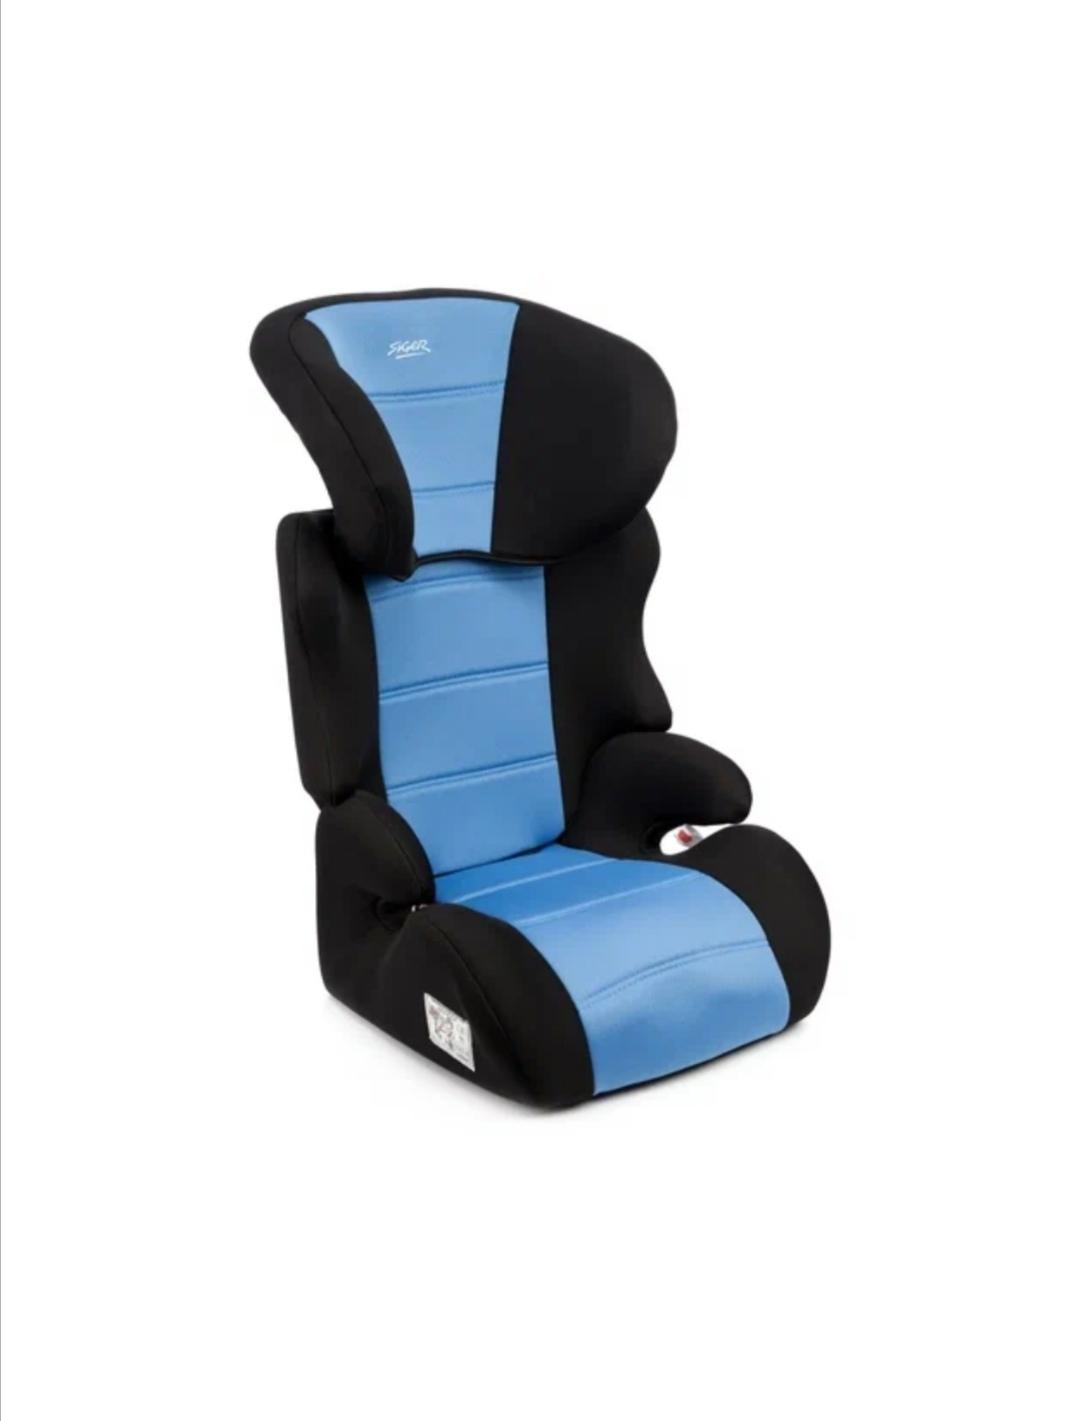 Автокресло Детское Каркасное Группа 2/3 (От 15 До 36 Кг) Голубой Siger Смарт (Ремень) AZAR ремень безопасности пятиточечный универсальный в коляску стульчик для кормления автокресло детское